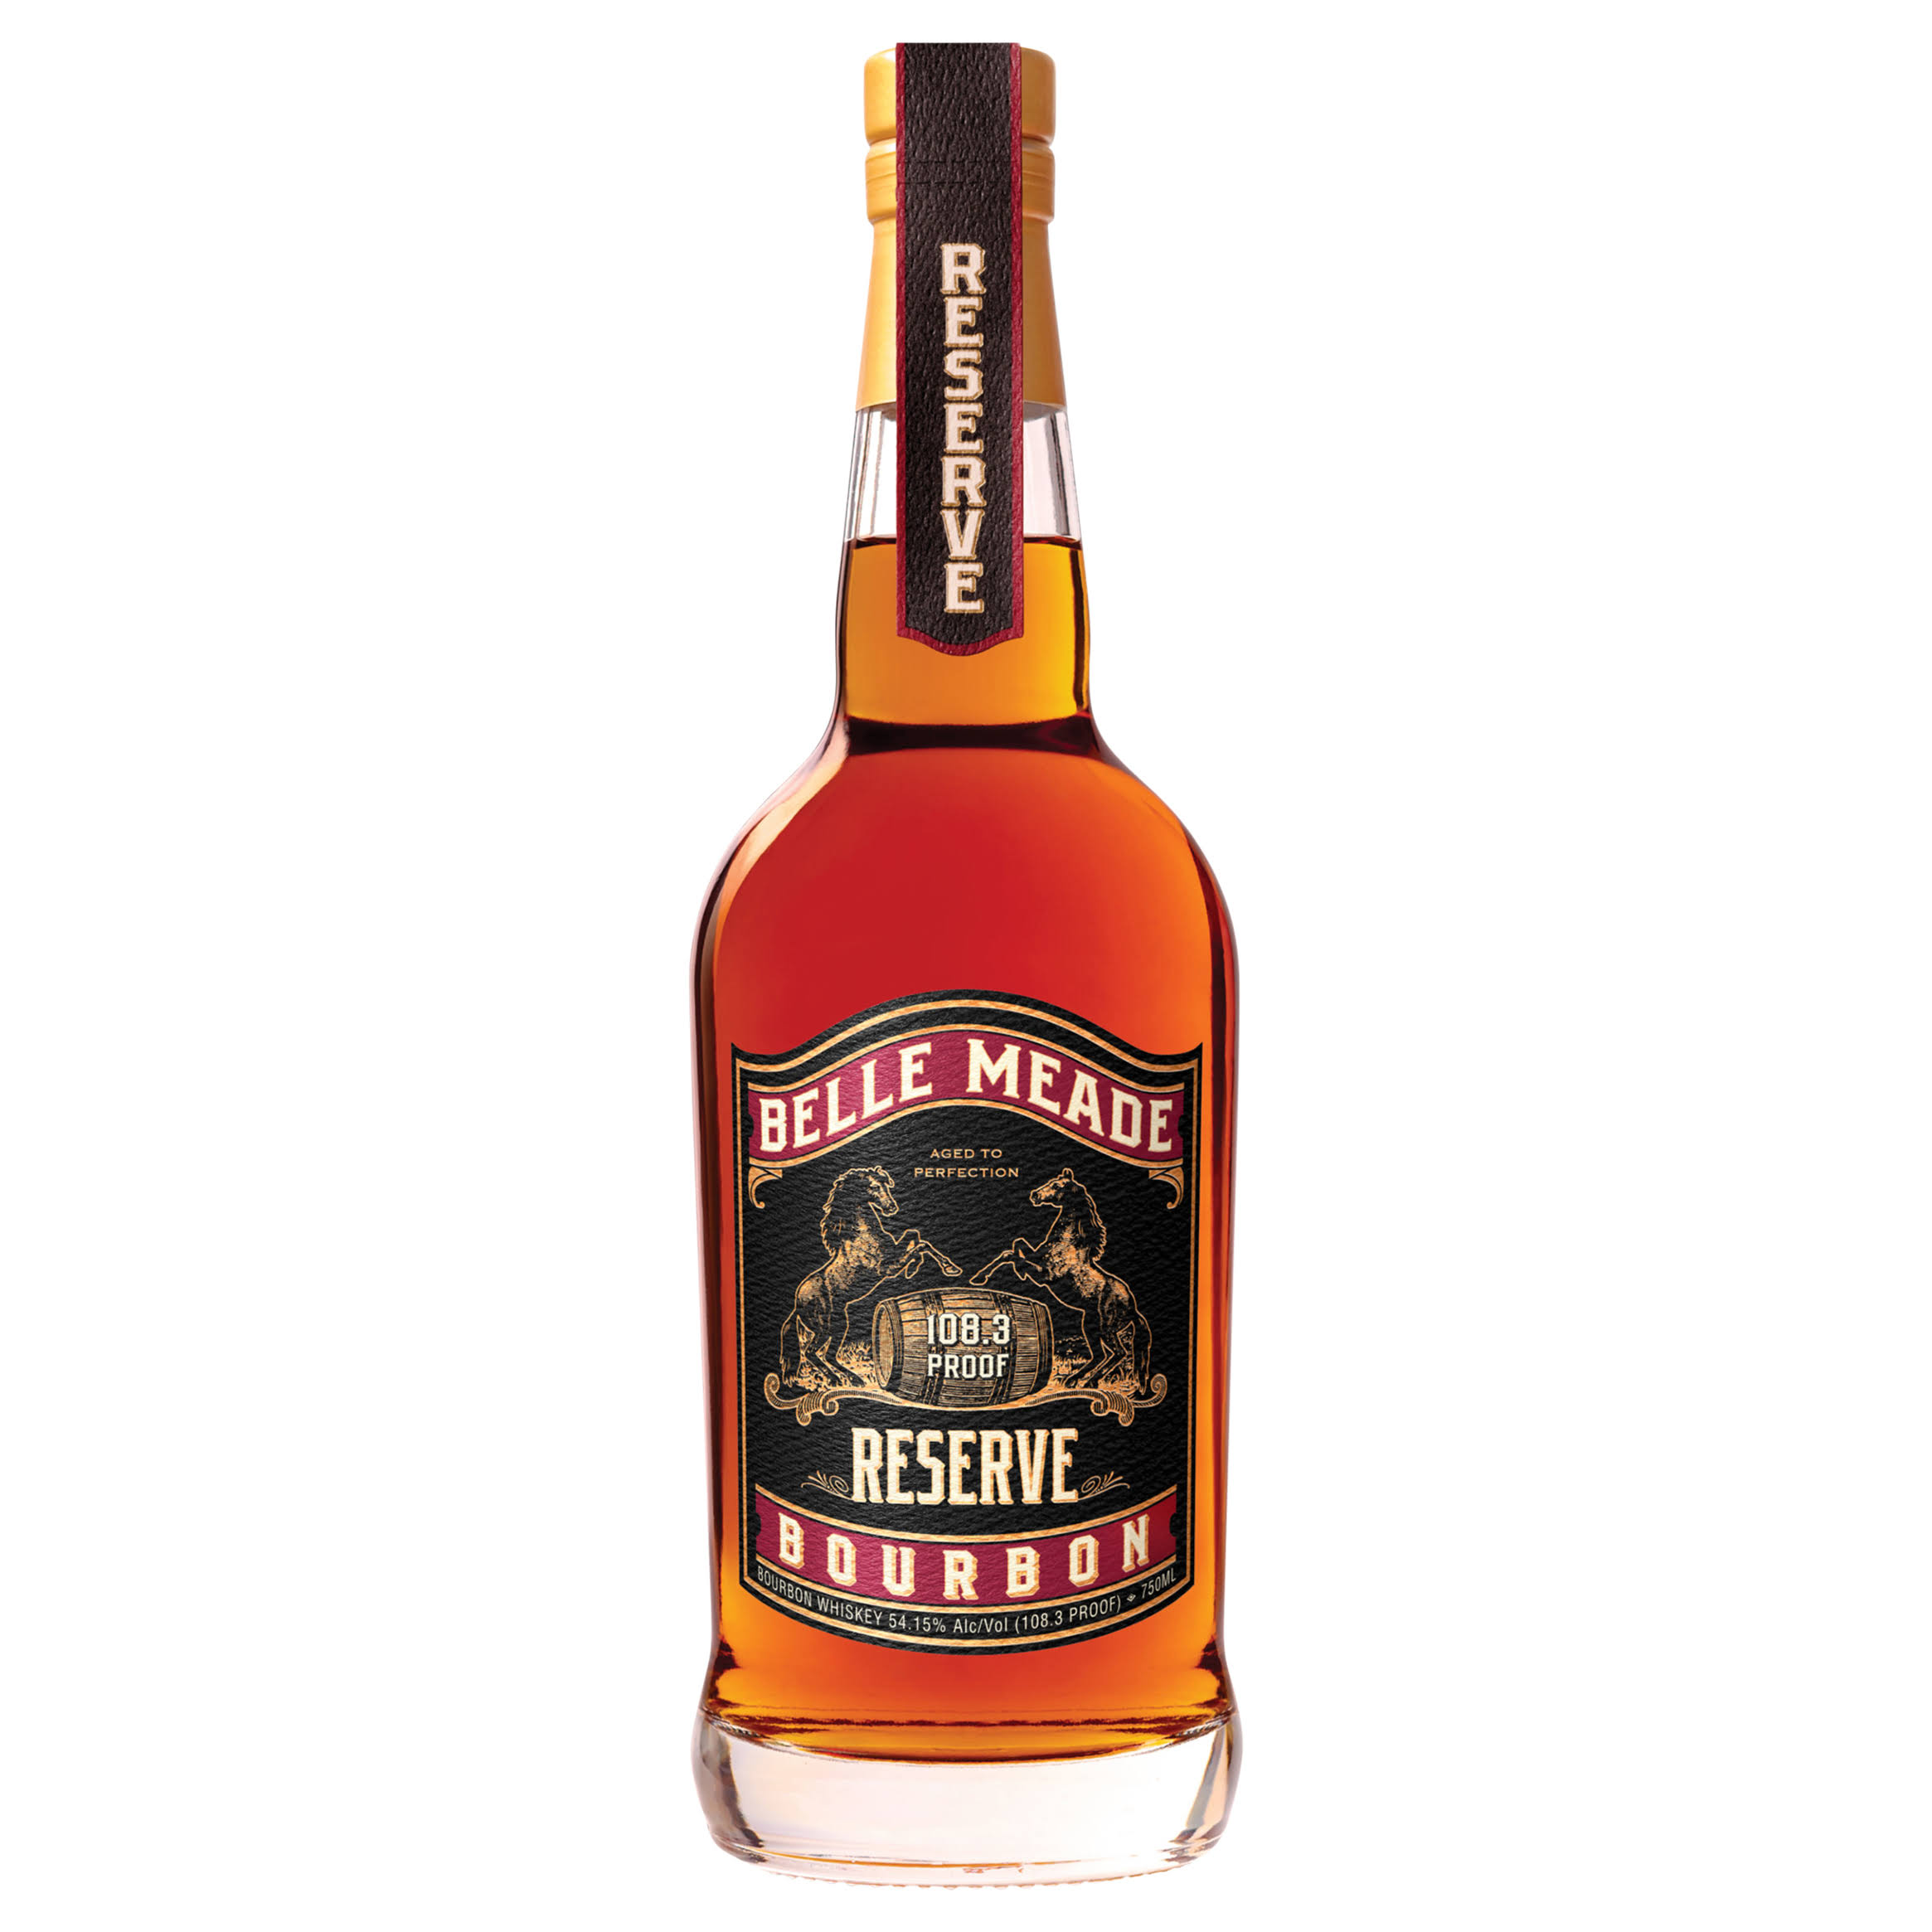 Belle Meade Cask Strength Reserve Bourbon Whiskey 750ml